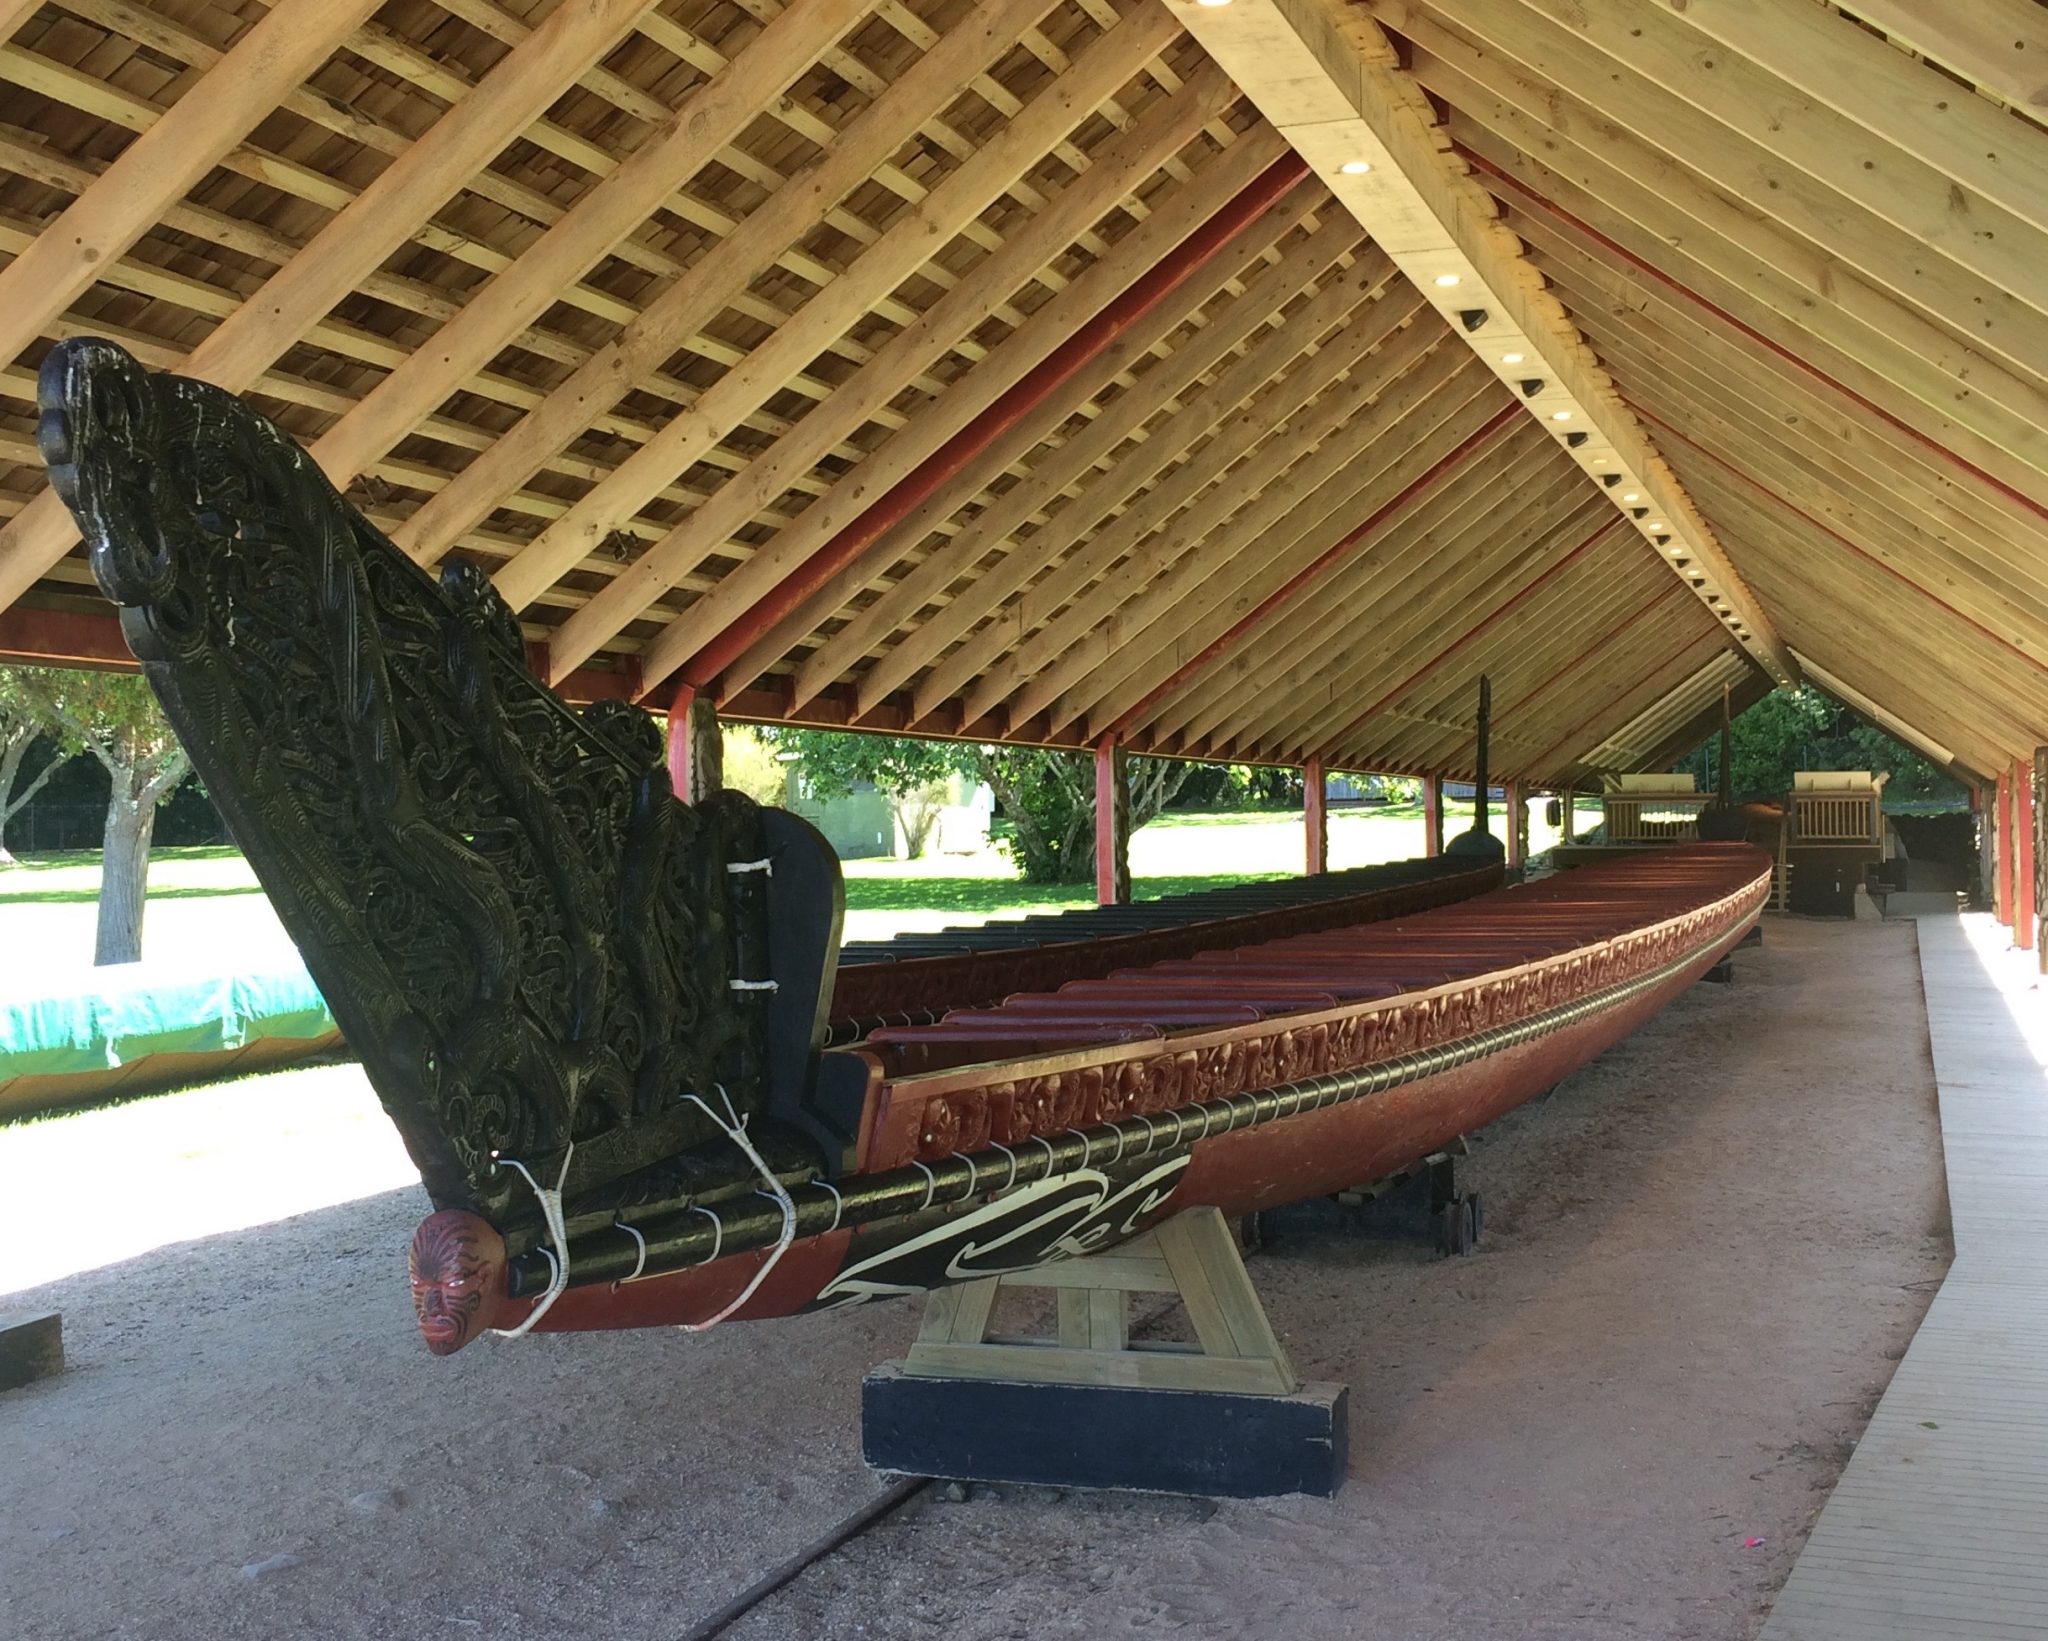 Ngatokimatawhaorua la canoa maori più grande al mondo 